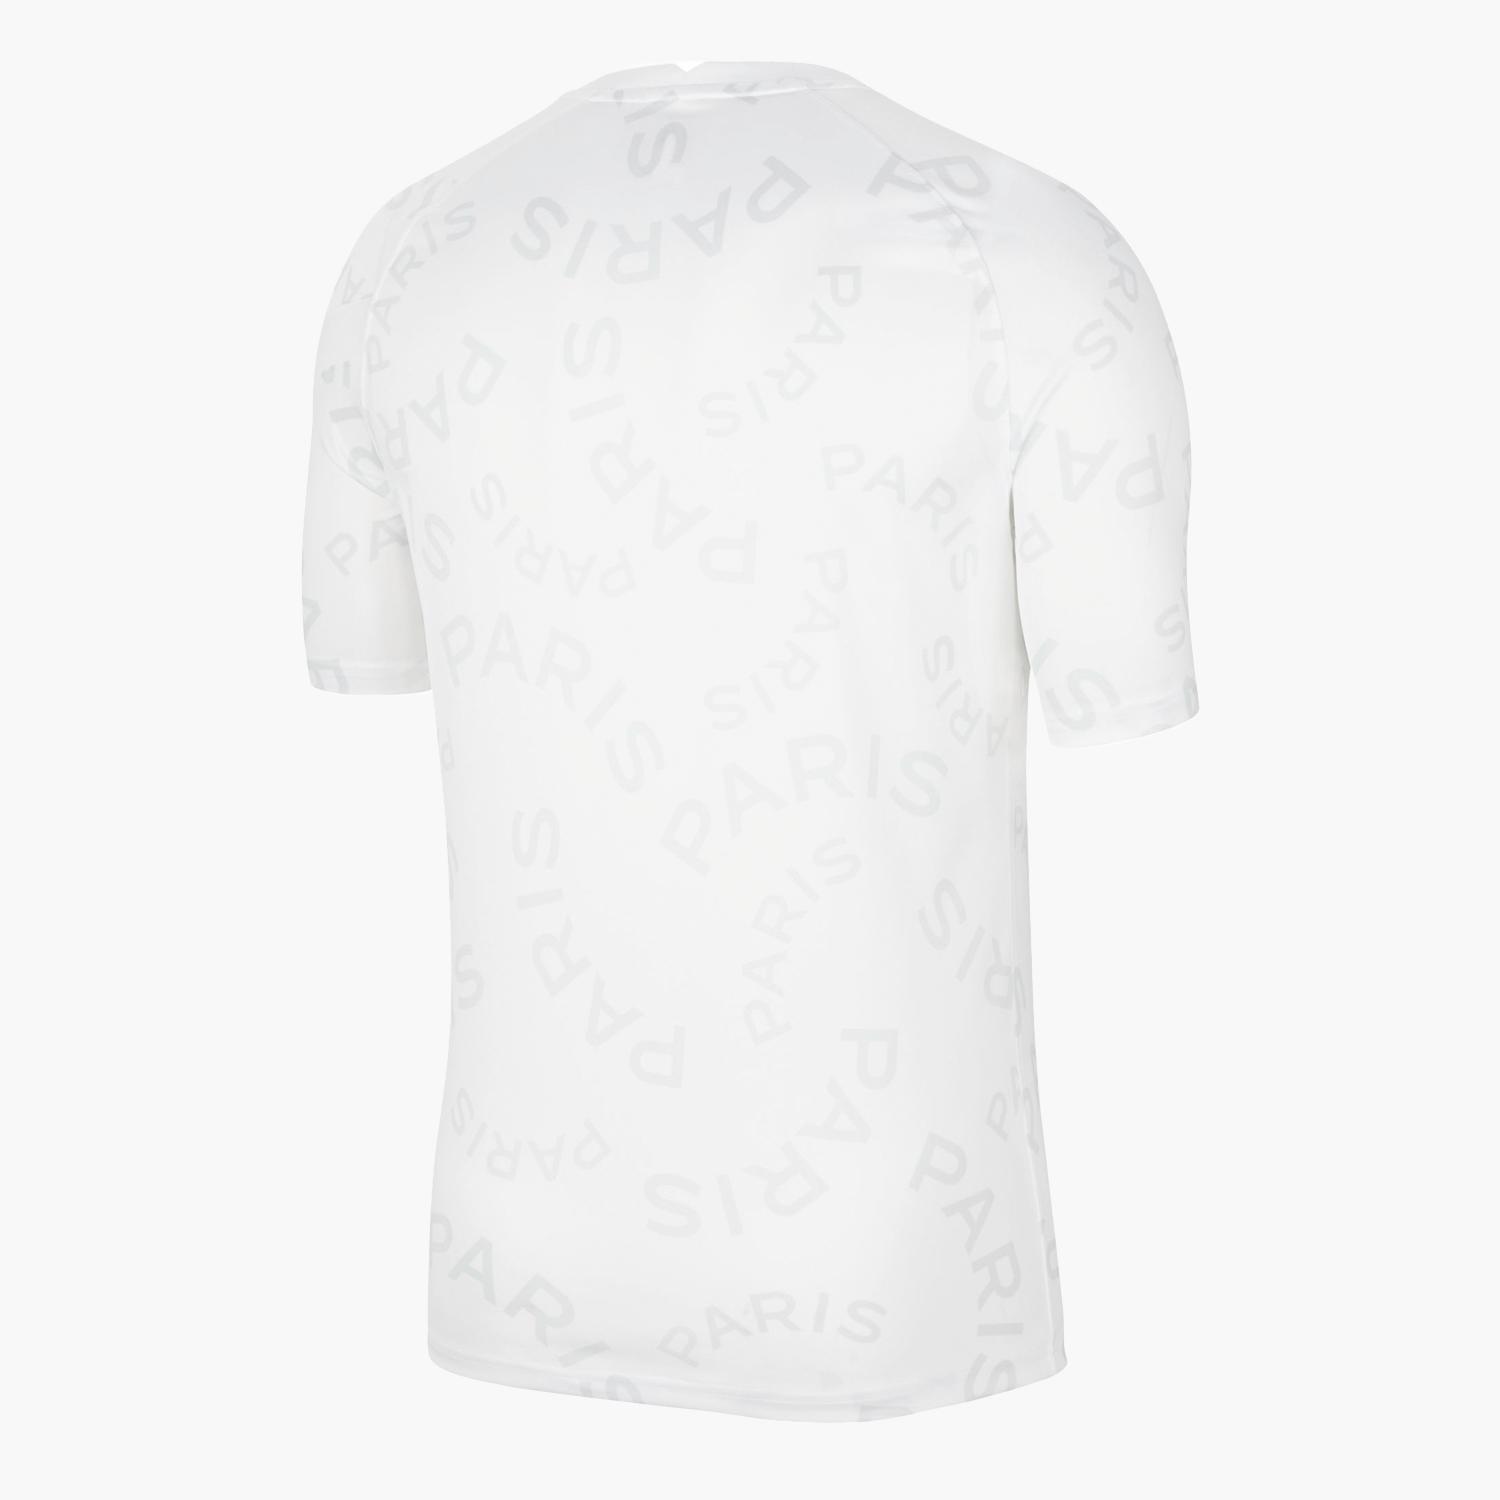 T-shirt PSG Branco - T-shirt Futebol Homem tamanho M